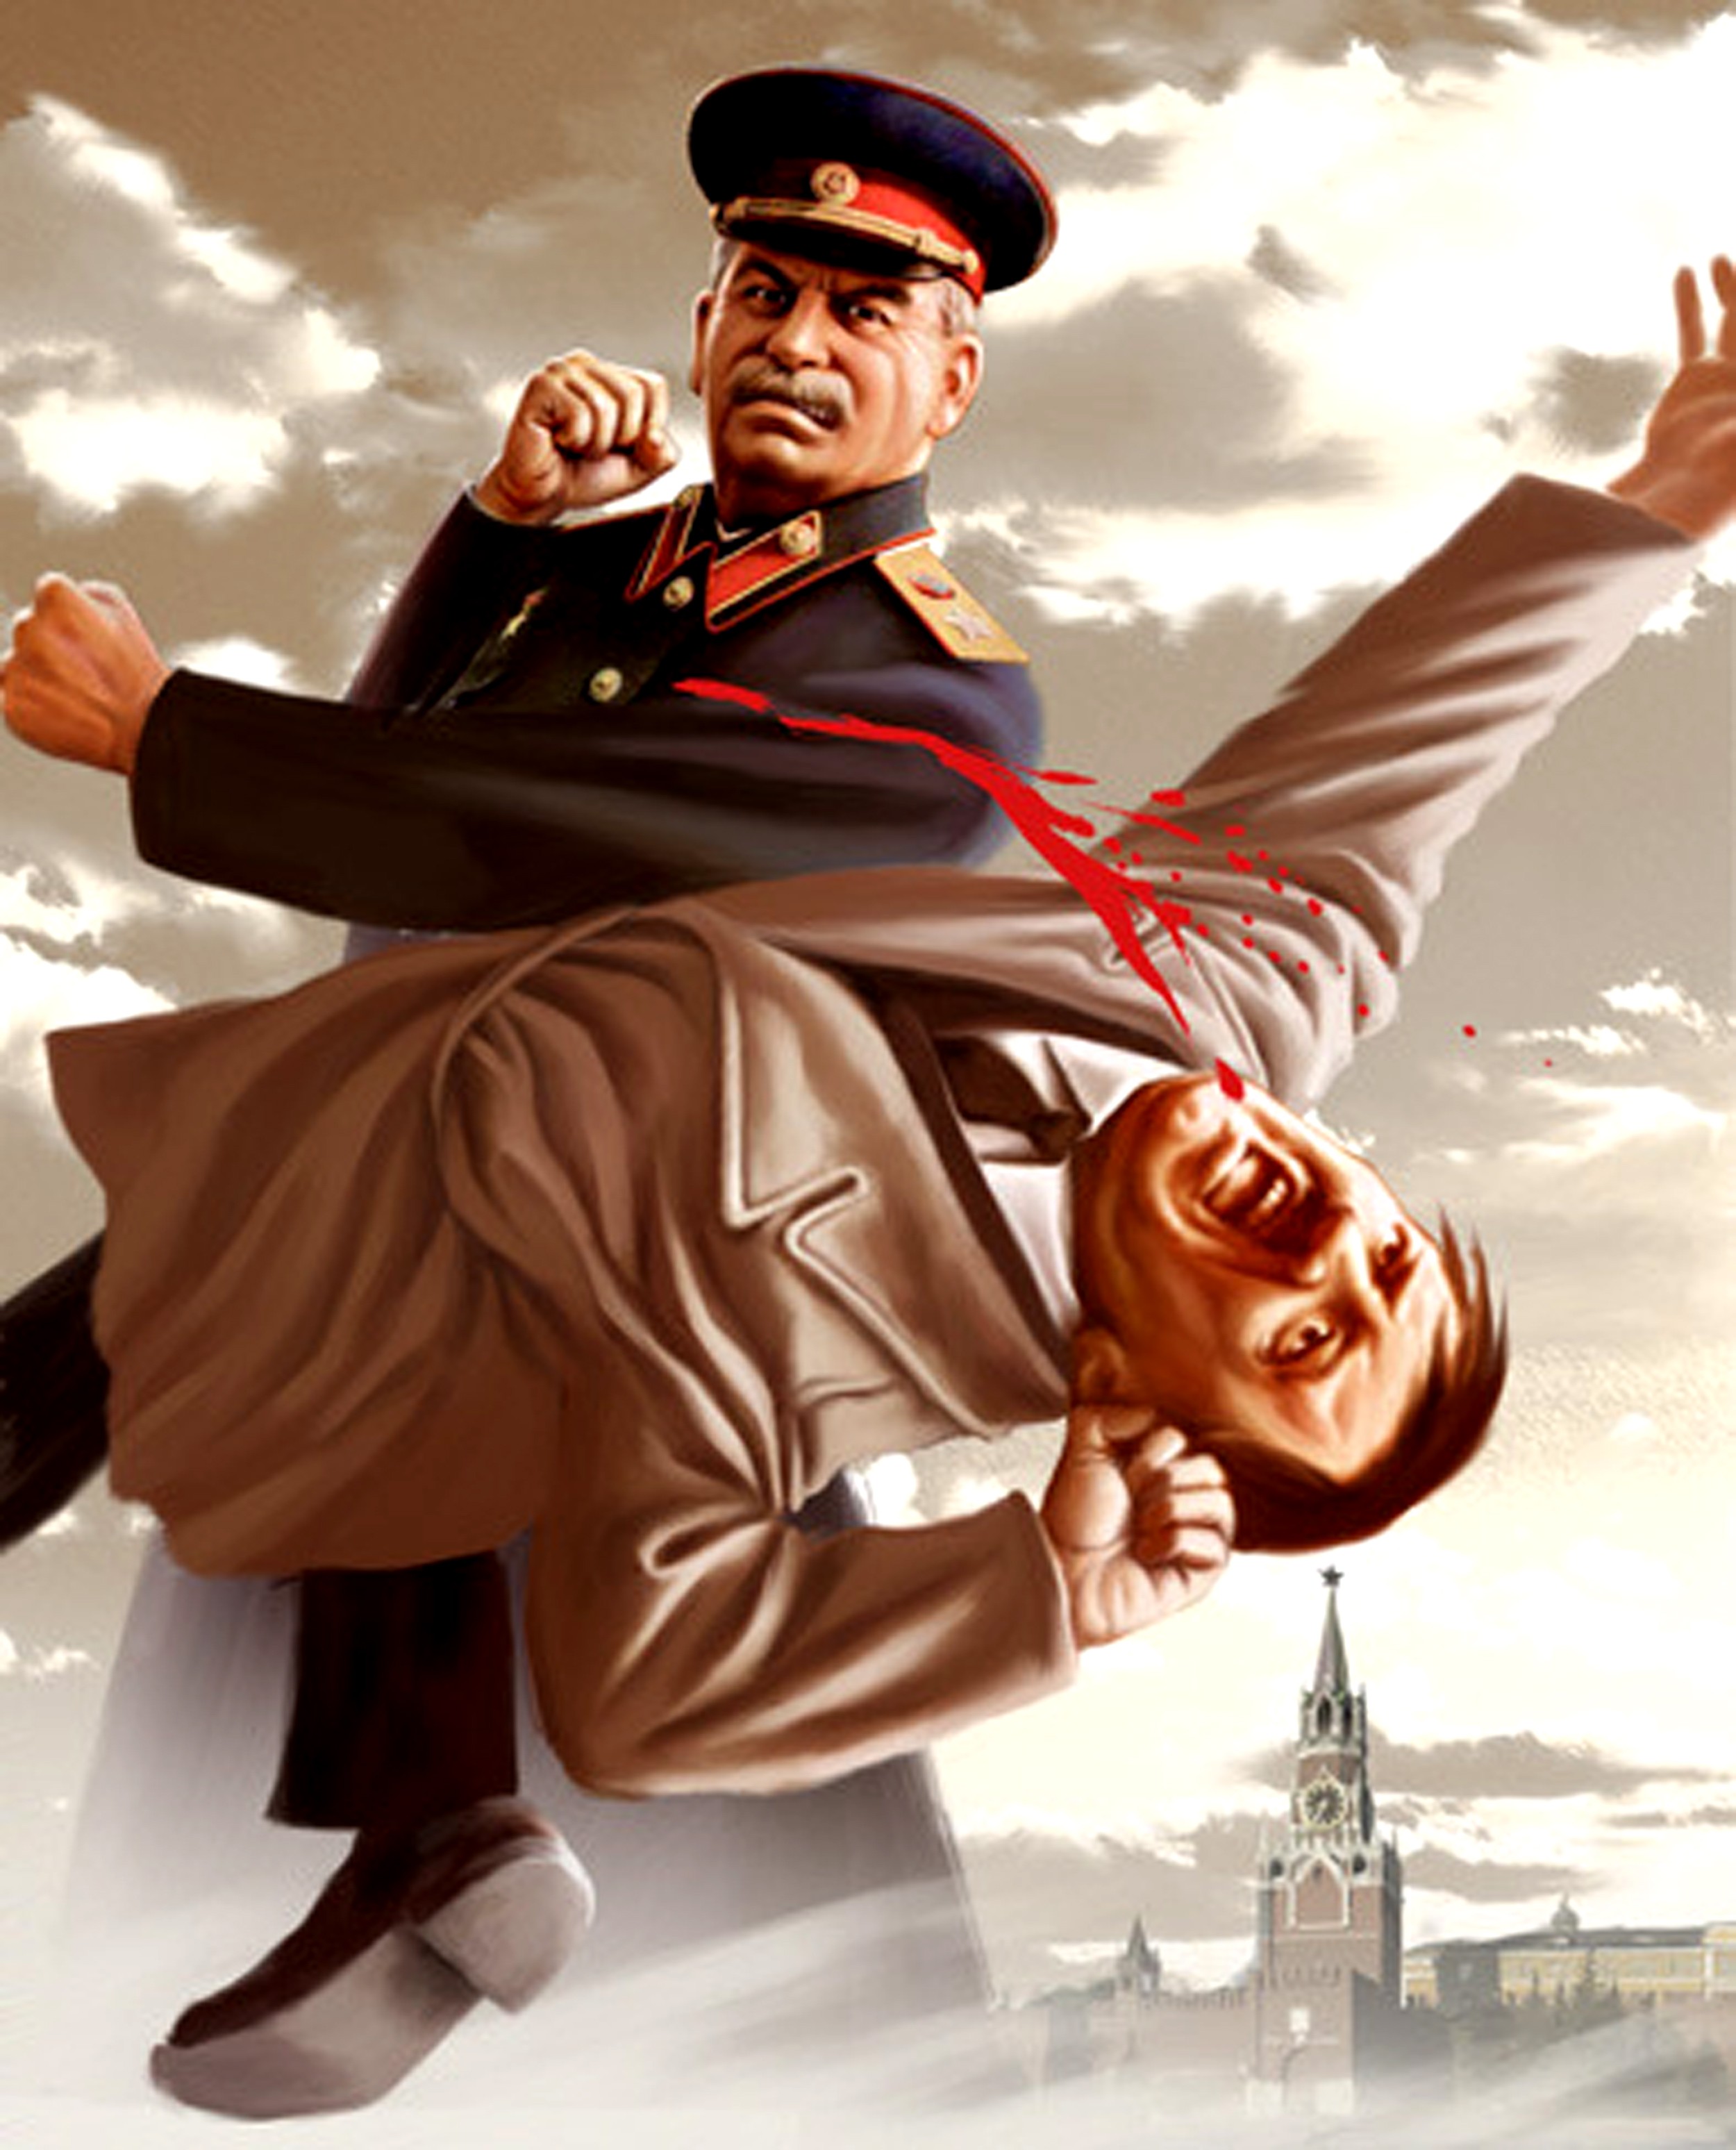 Stalin Hitler , HD Wallpaper & Backgrounds